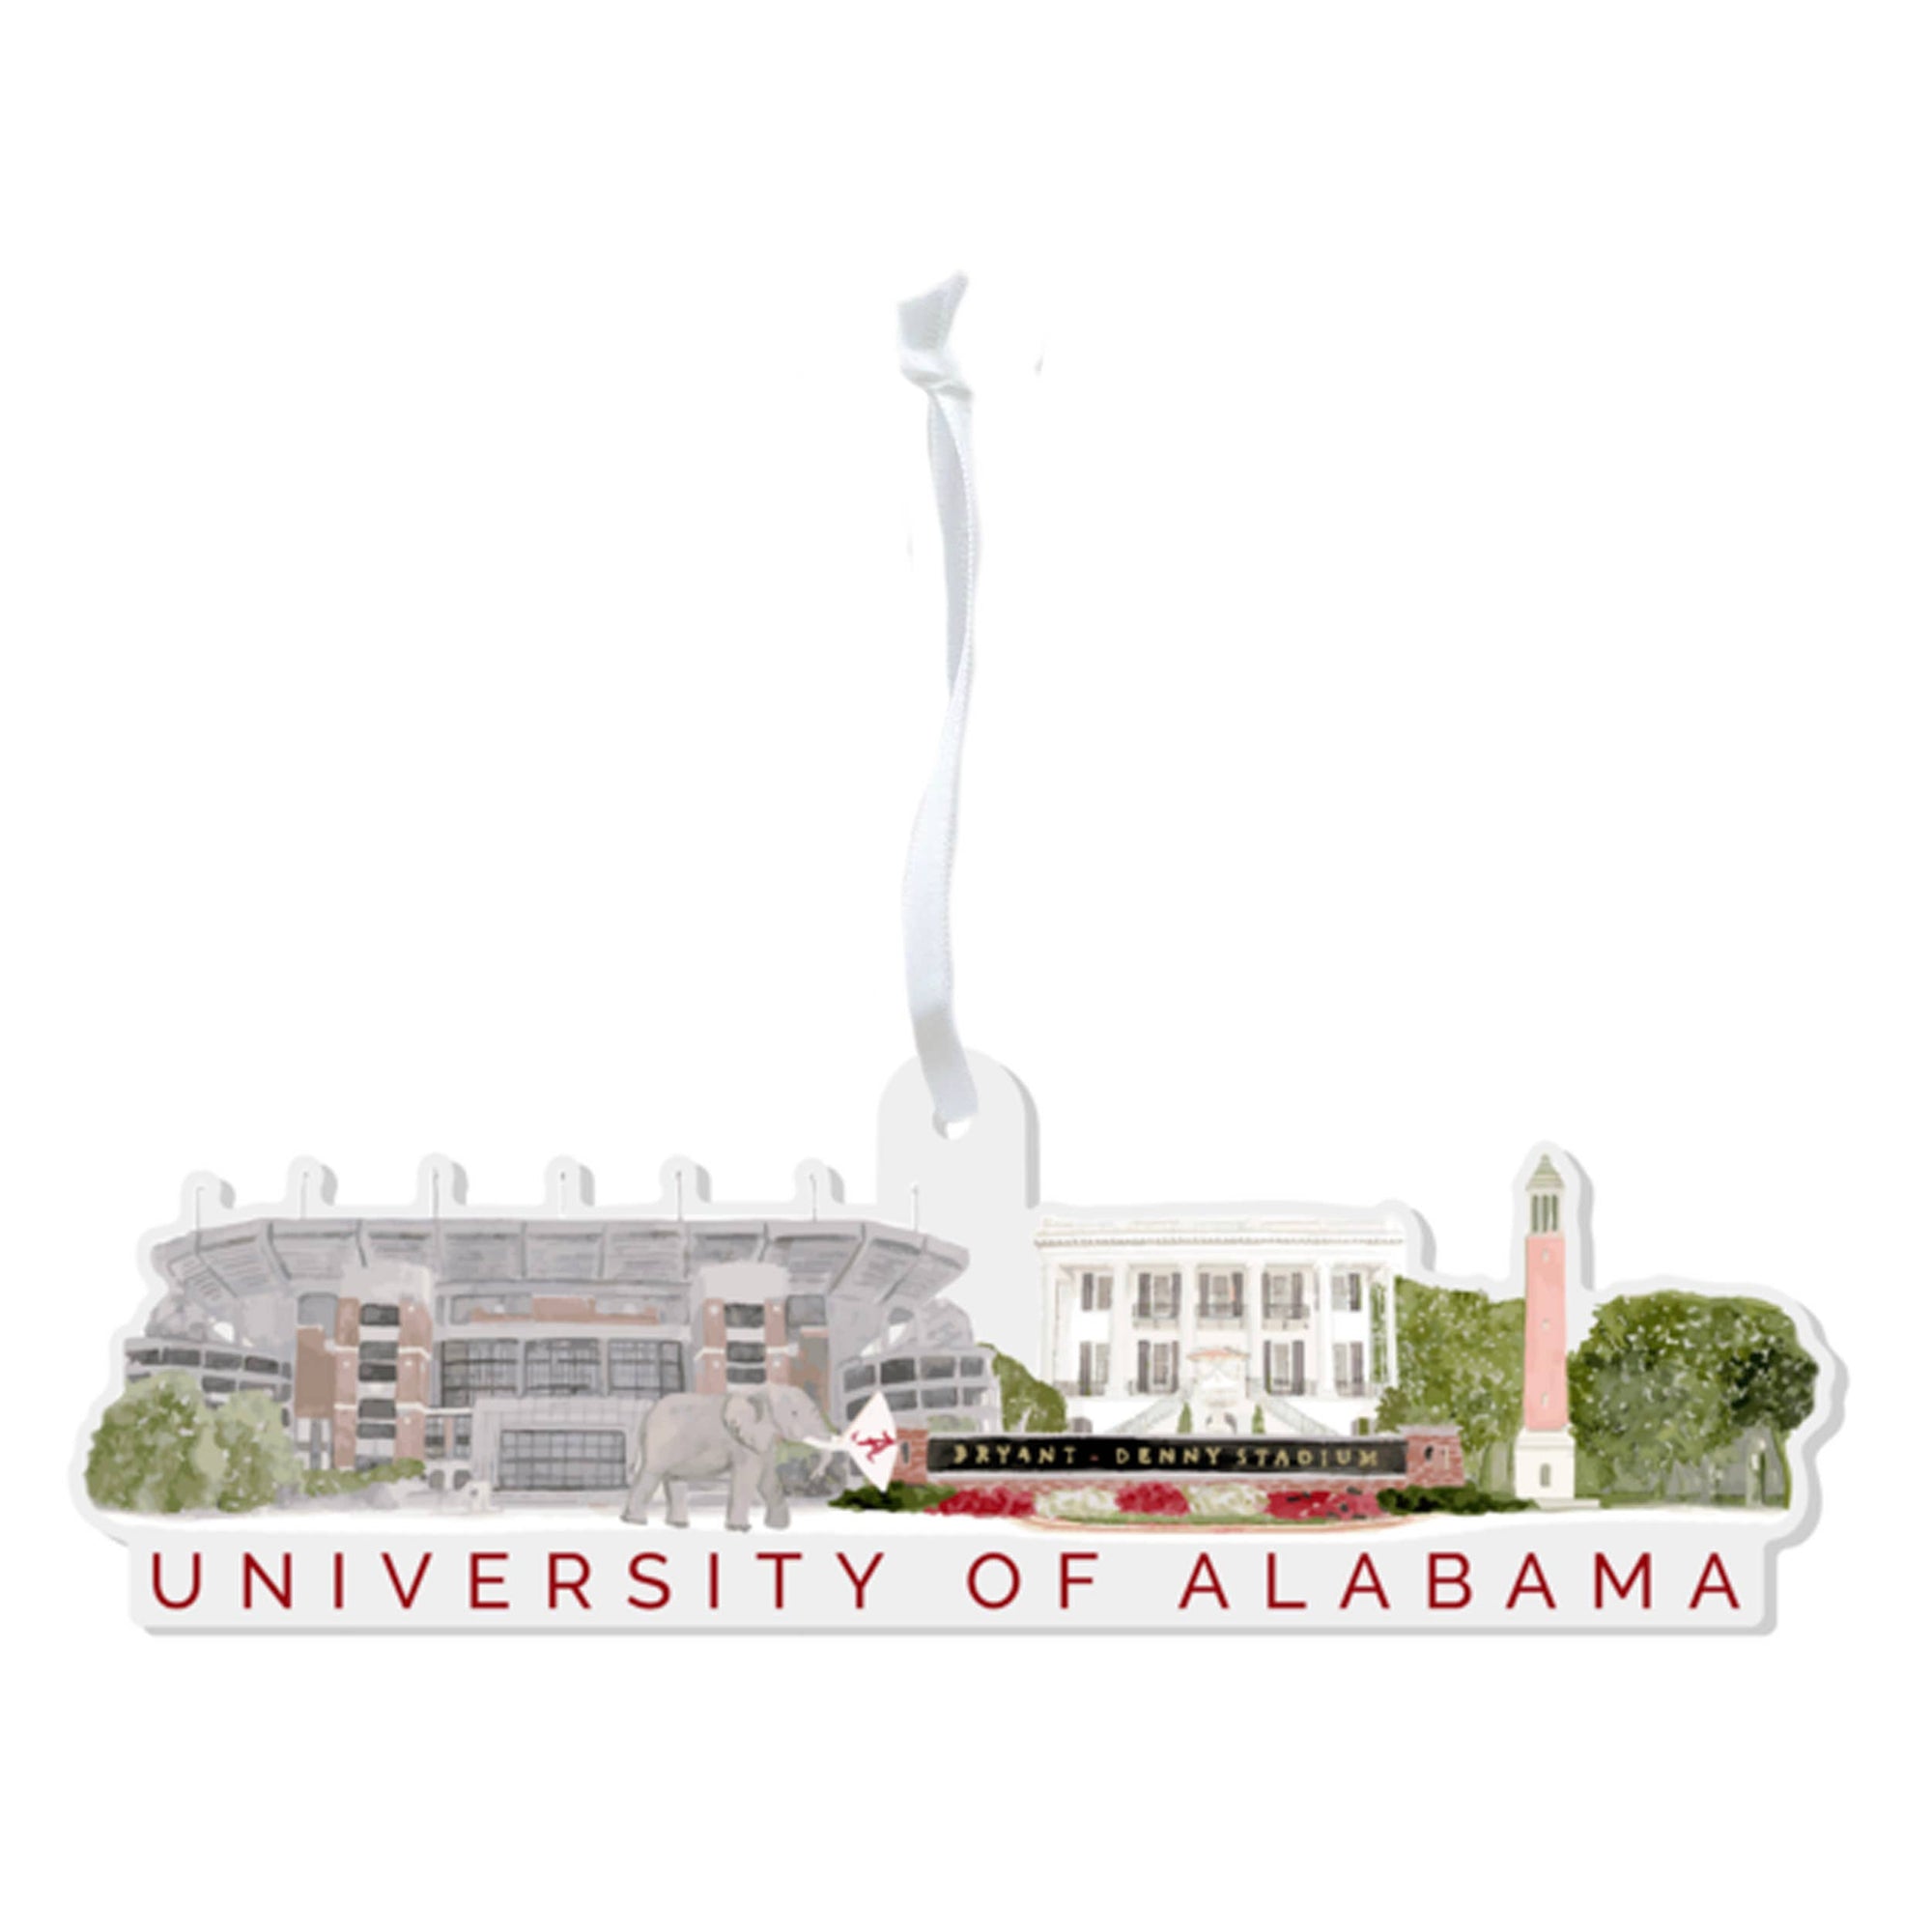 Acrylic University of Alabama Ornament